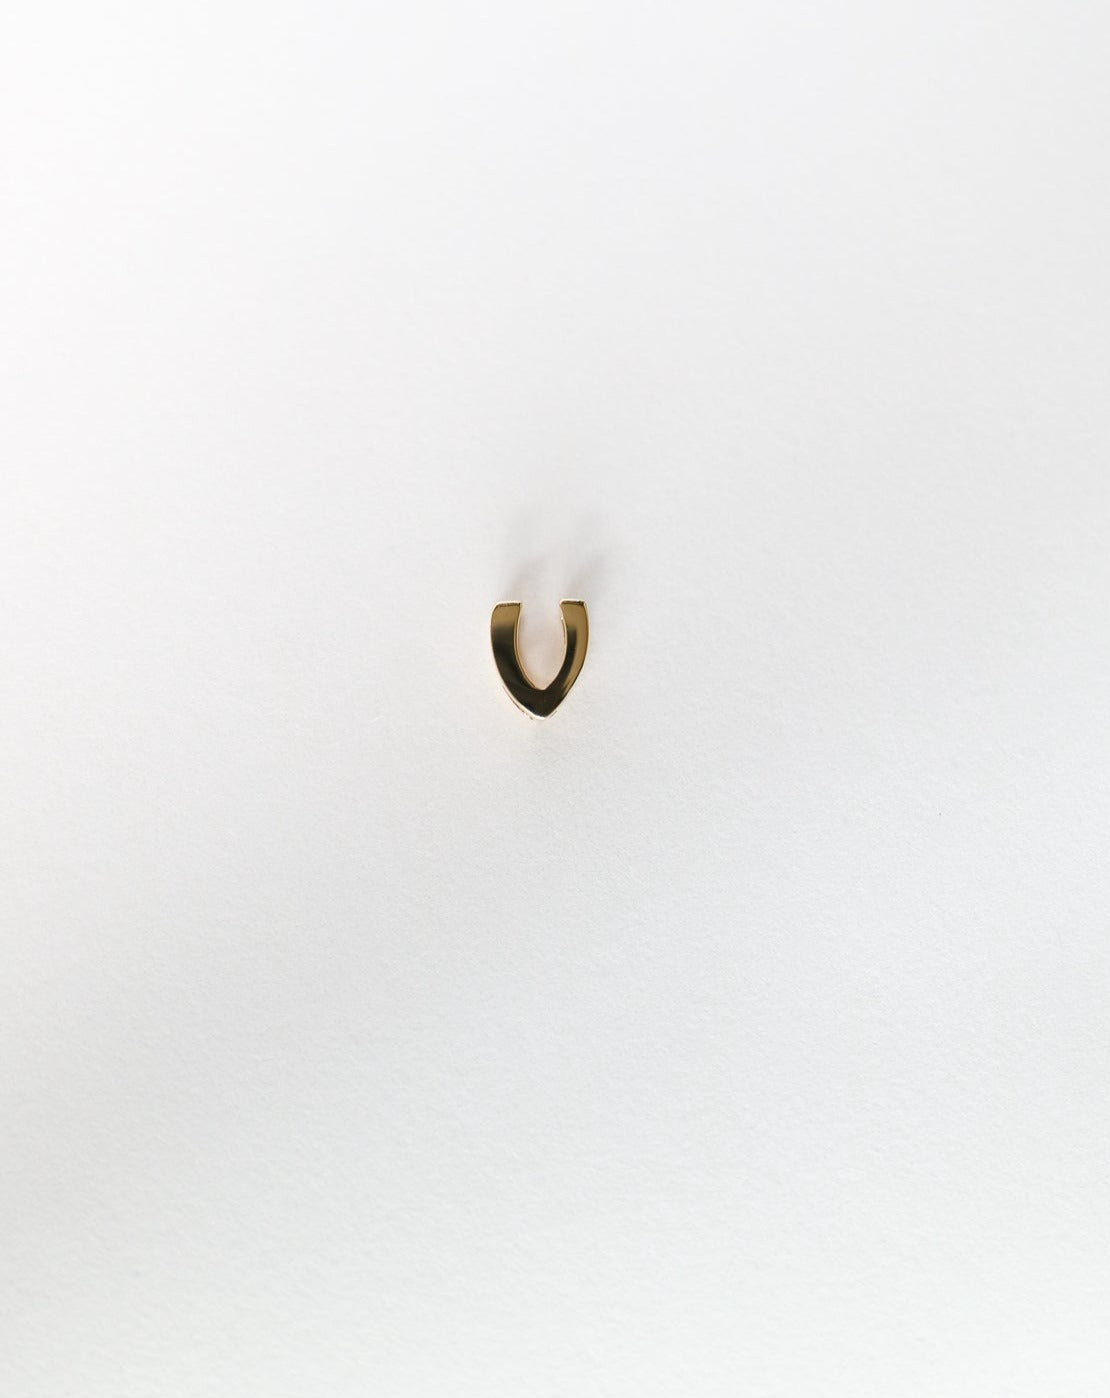 V initial charm letter pendant in 14kt gold